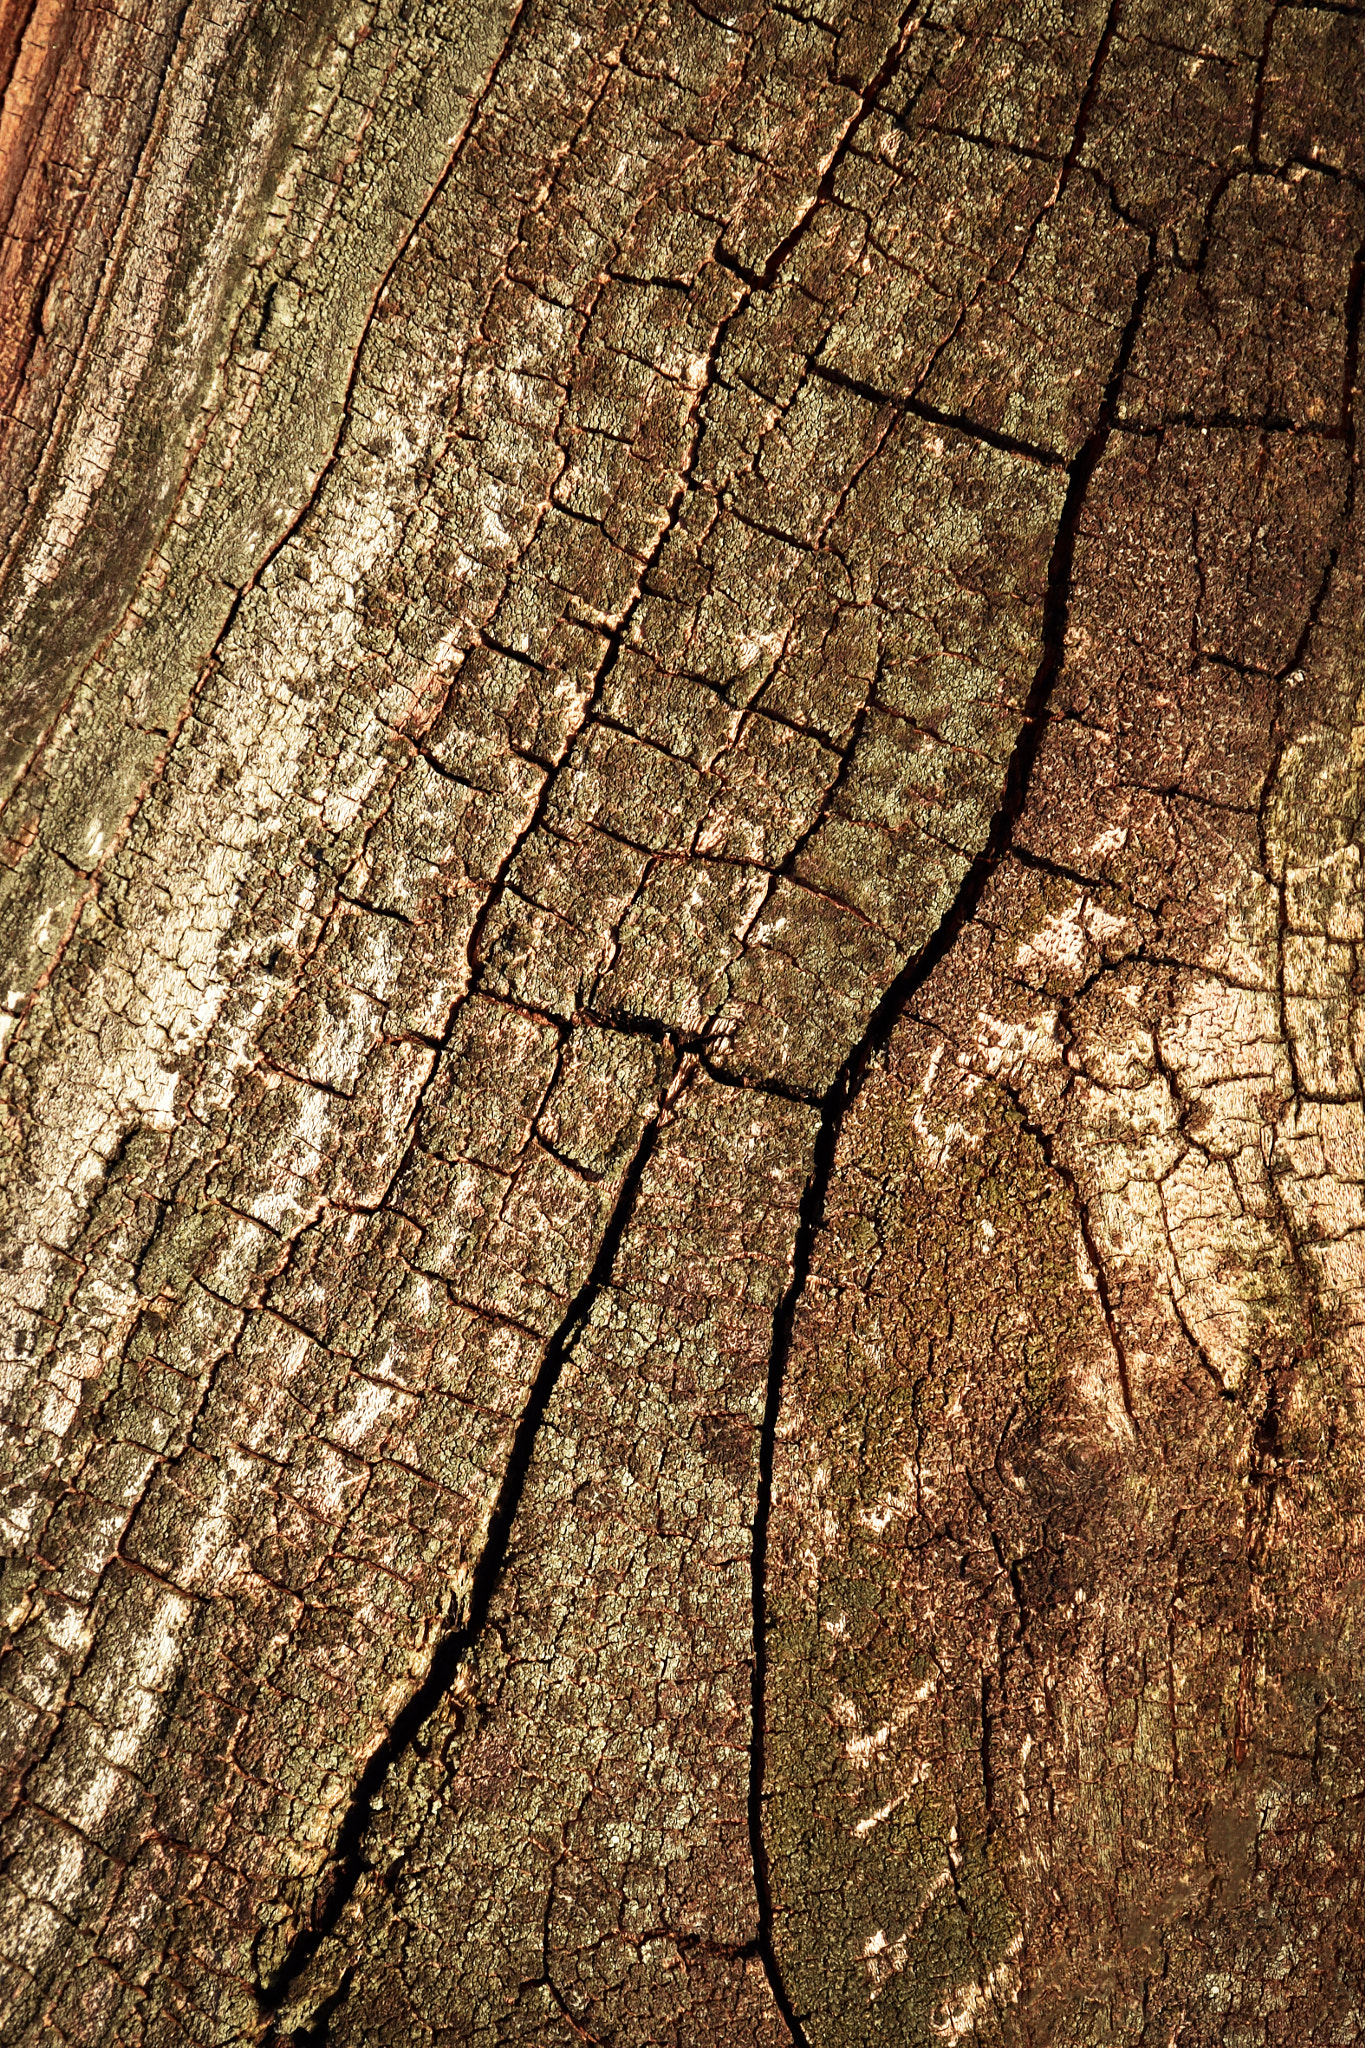 Nikon D5500 + Nikon AF-S DX Nikkor 16-85mm F3.5-5.6G ED VR sample photo. Old tree bark with cracks photography